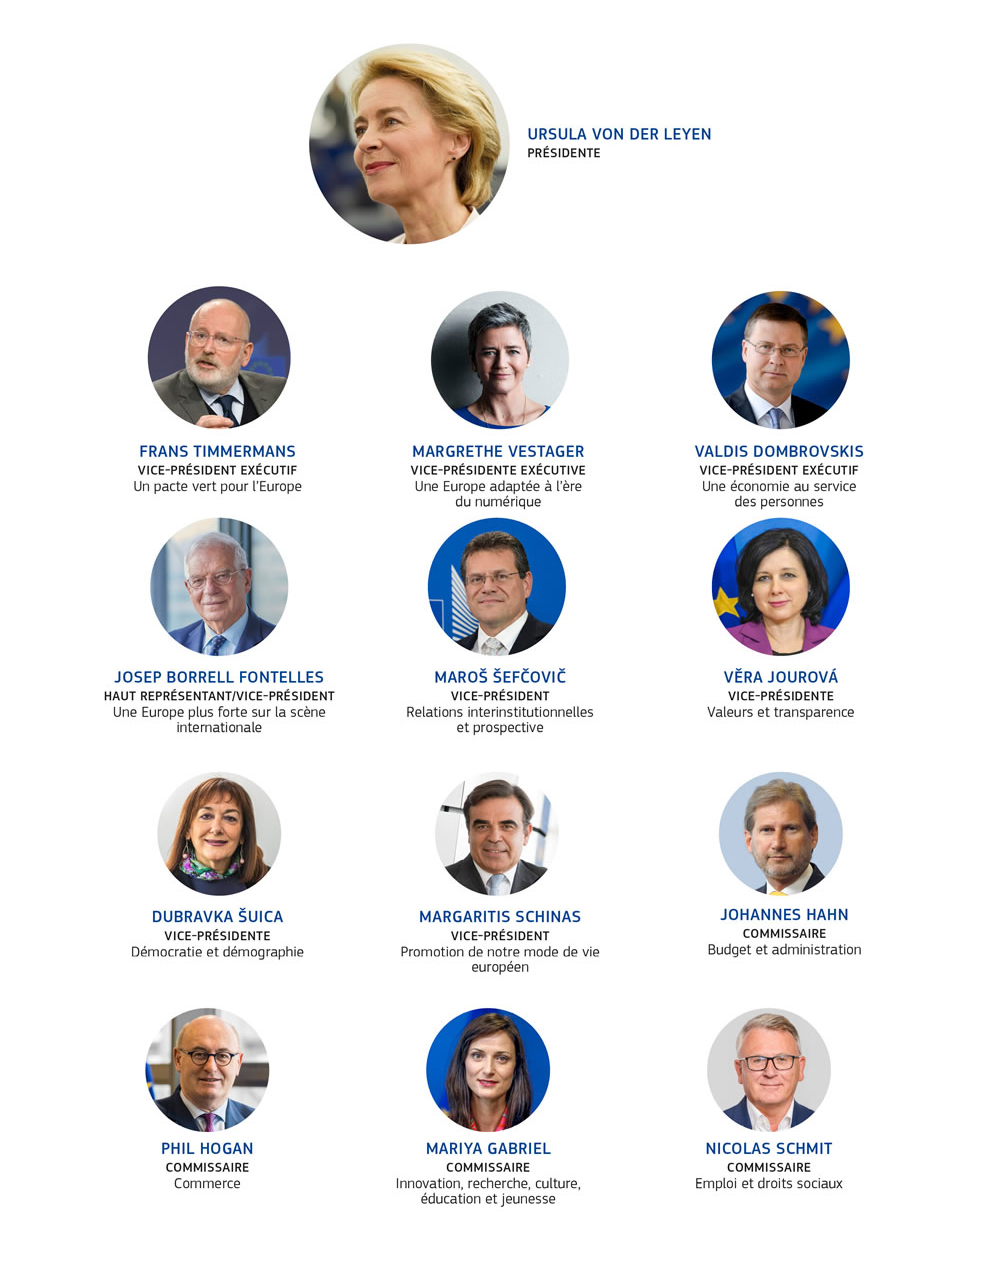 Portraits et portefeuilles des différents membres du collège des commissaires entre 2019 et 2024.